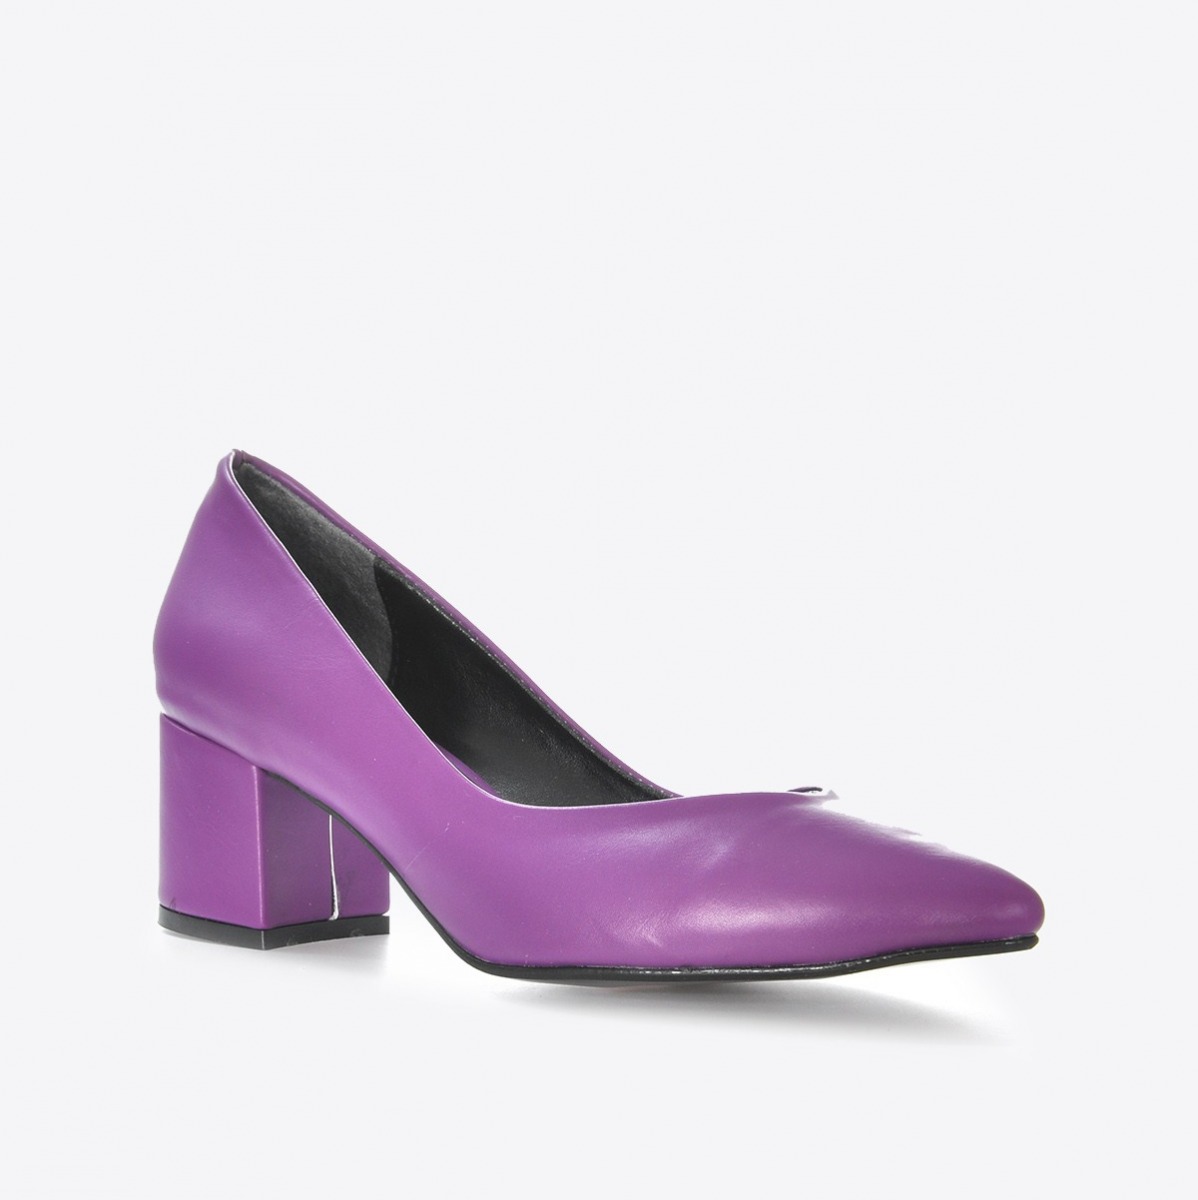 Flo Kadın Mor Klasik Topuklu Ayakkabı VZN21-040Y. 1